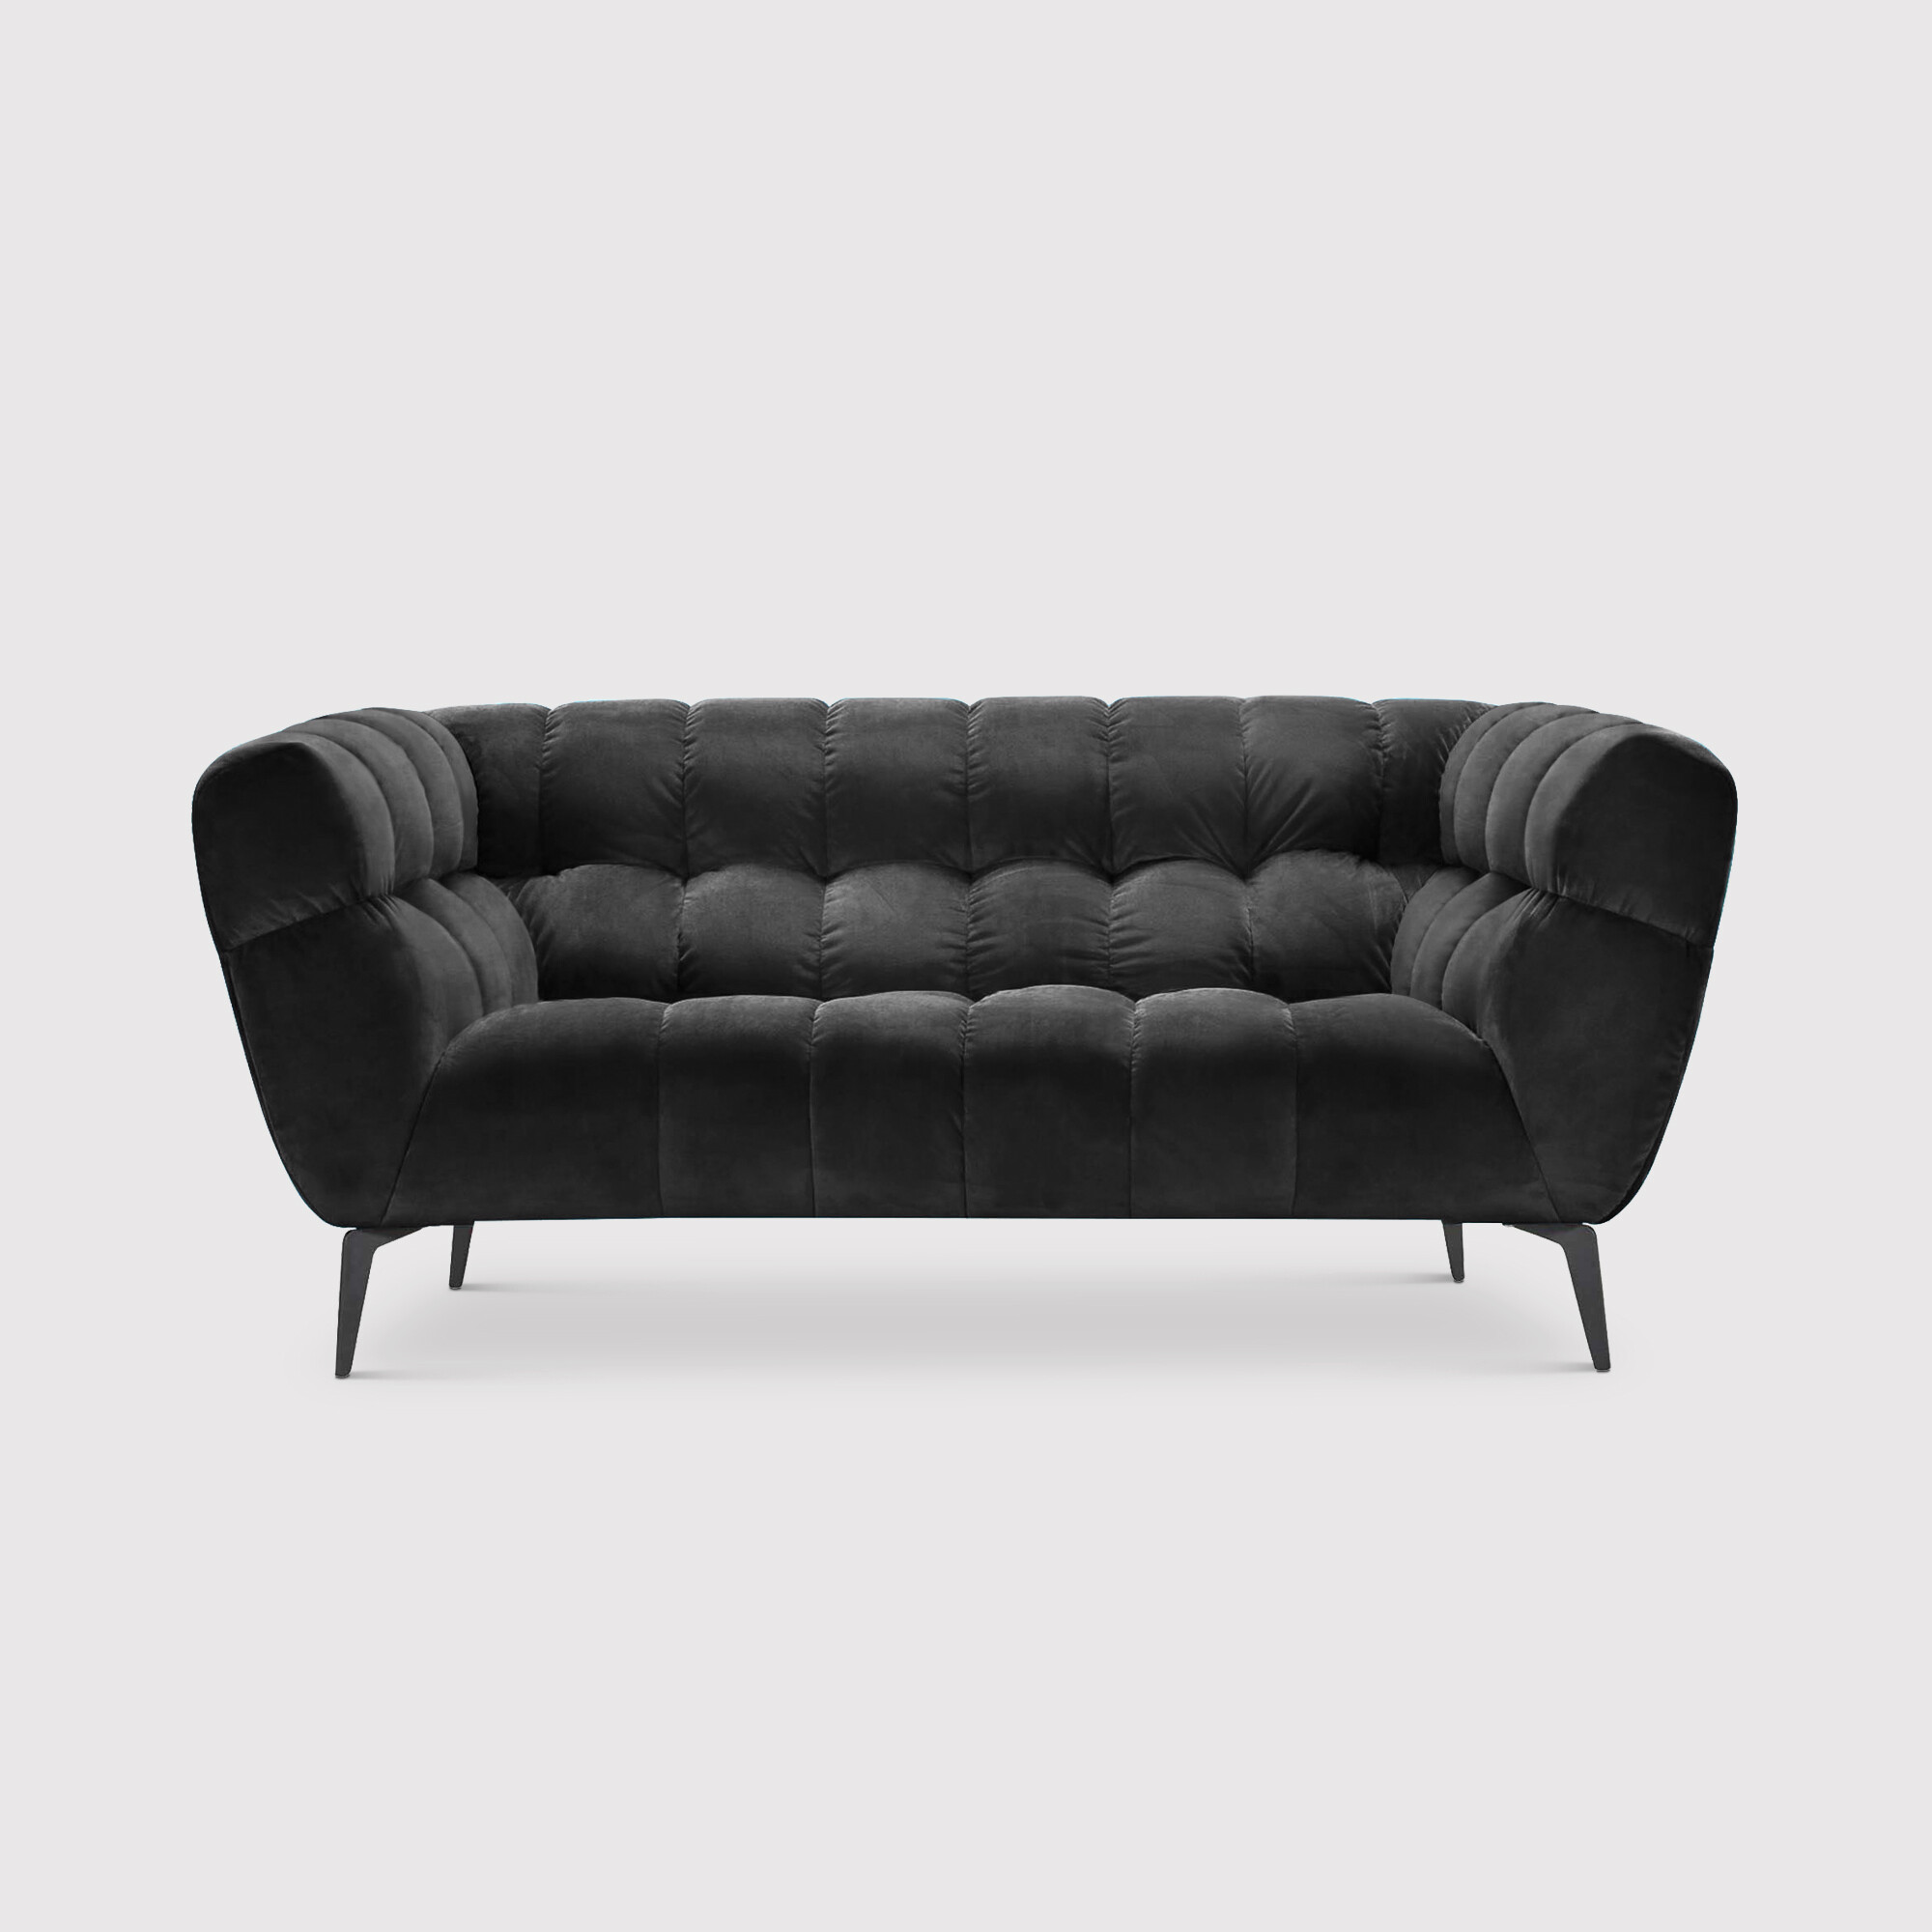 Azalea 1.5 Seater Sofa, Black Fabric | Barker & Stonehouse